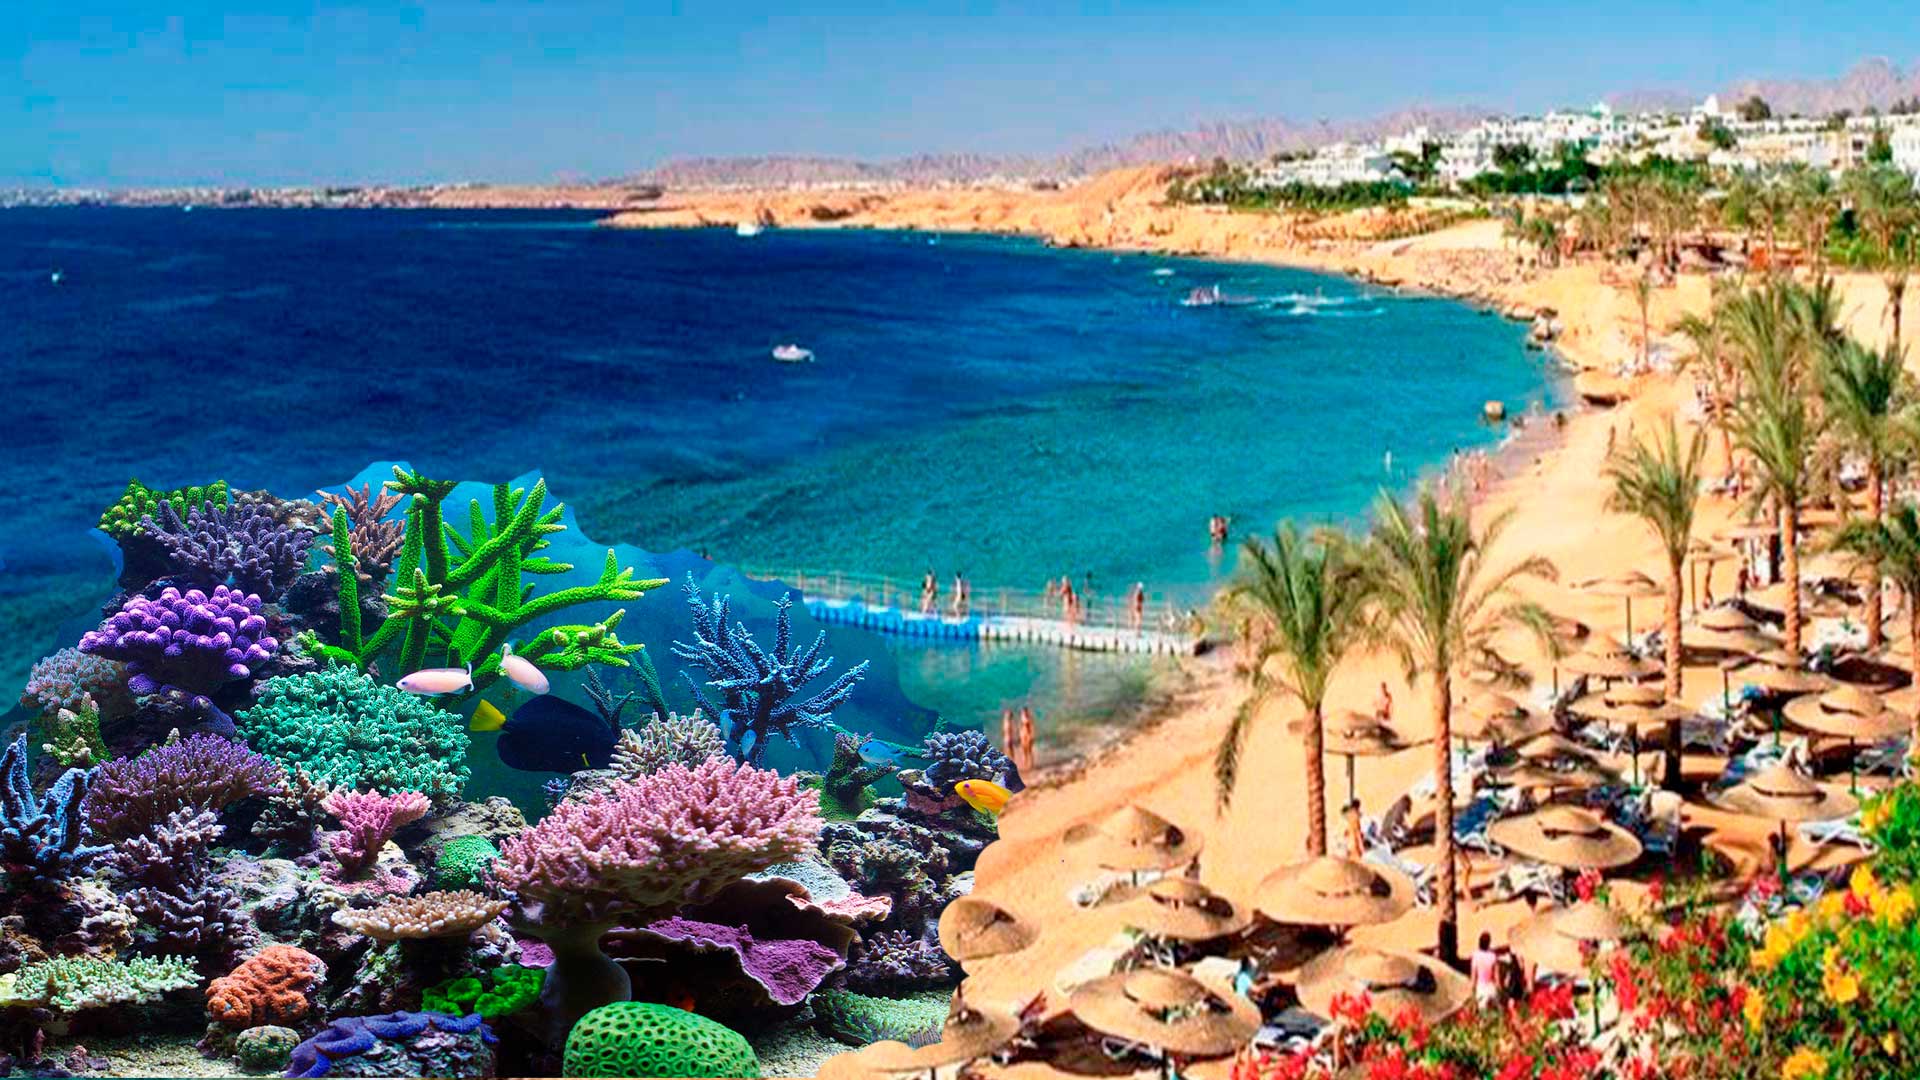  Шарм-эль-Шейх - коралловый рай Египта.